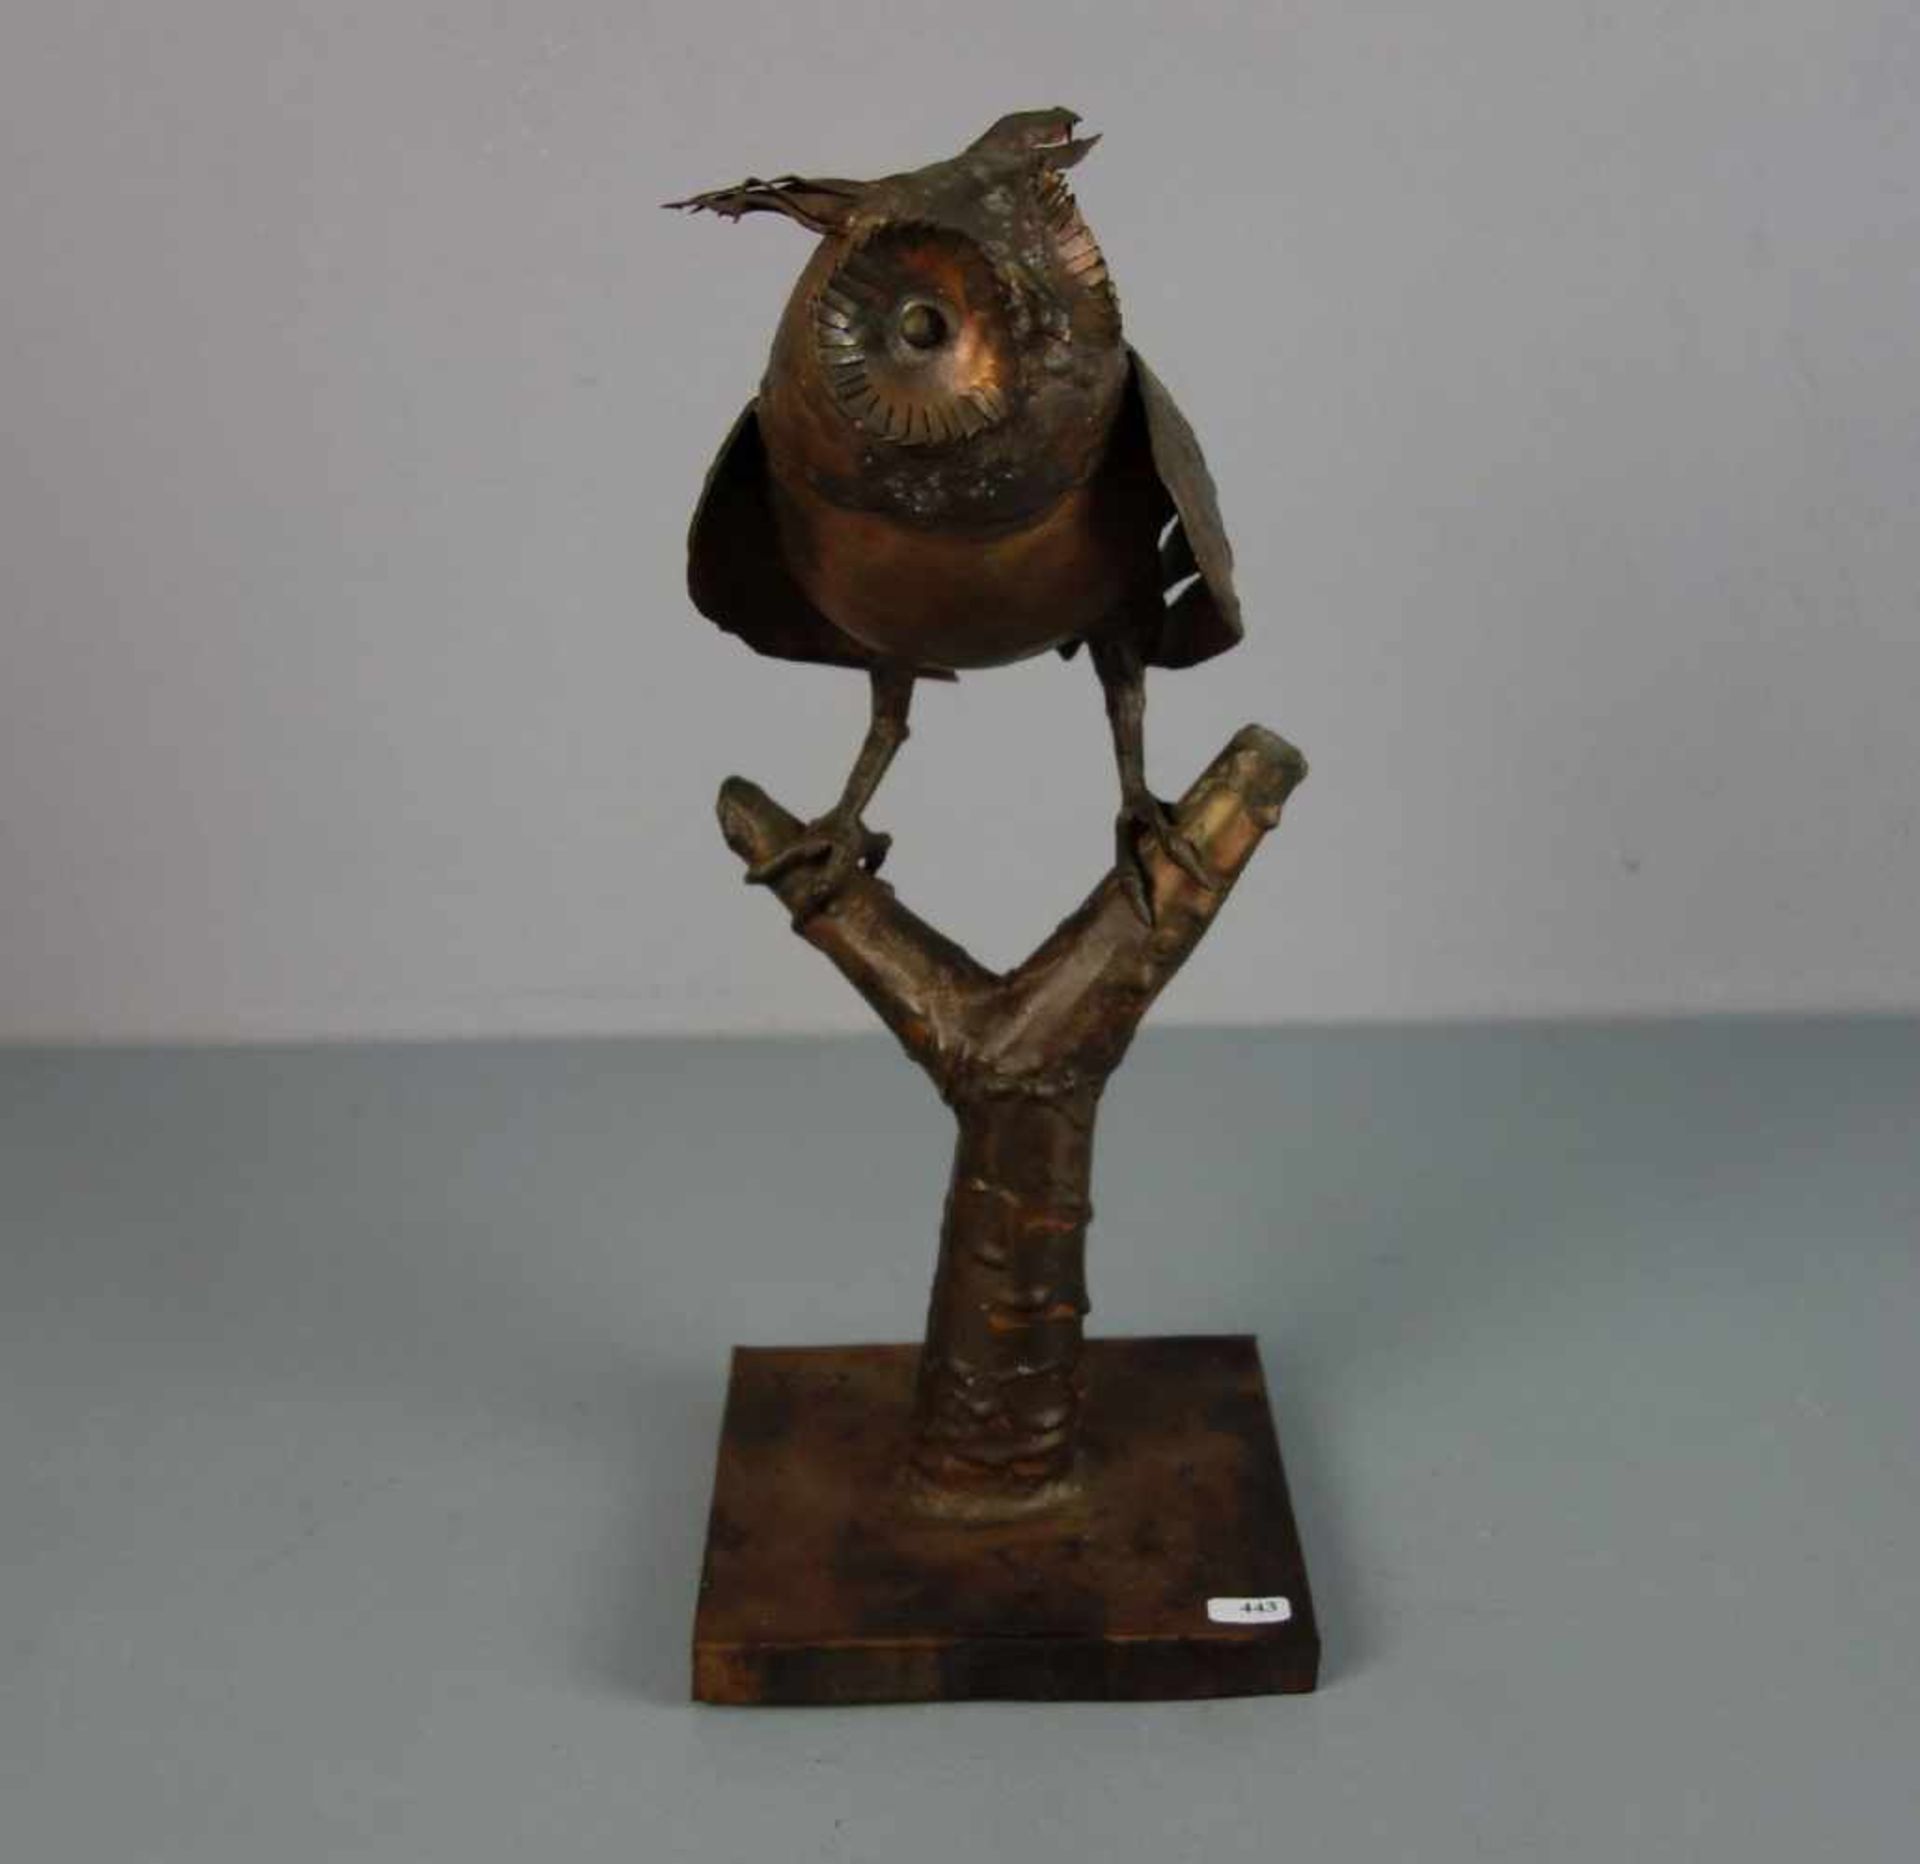 MONOGRAMMIST (C. M.; Bildhauer des 19./20. Jh.), Skulptur / scultpure: "Eule", Kupfer, in Handarbeit